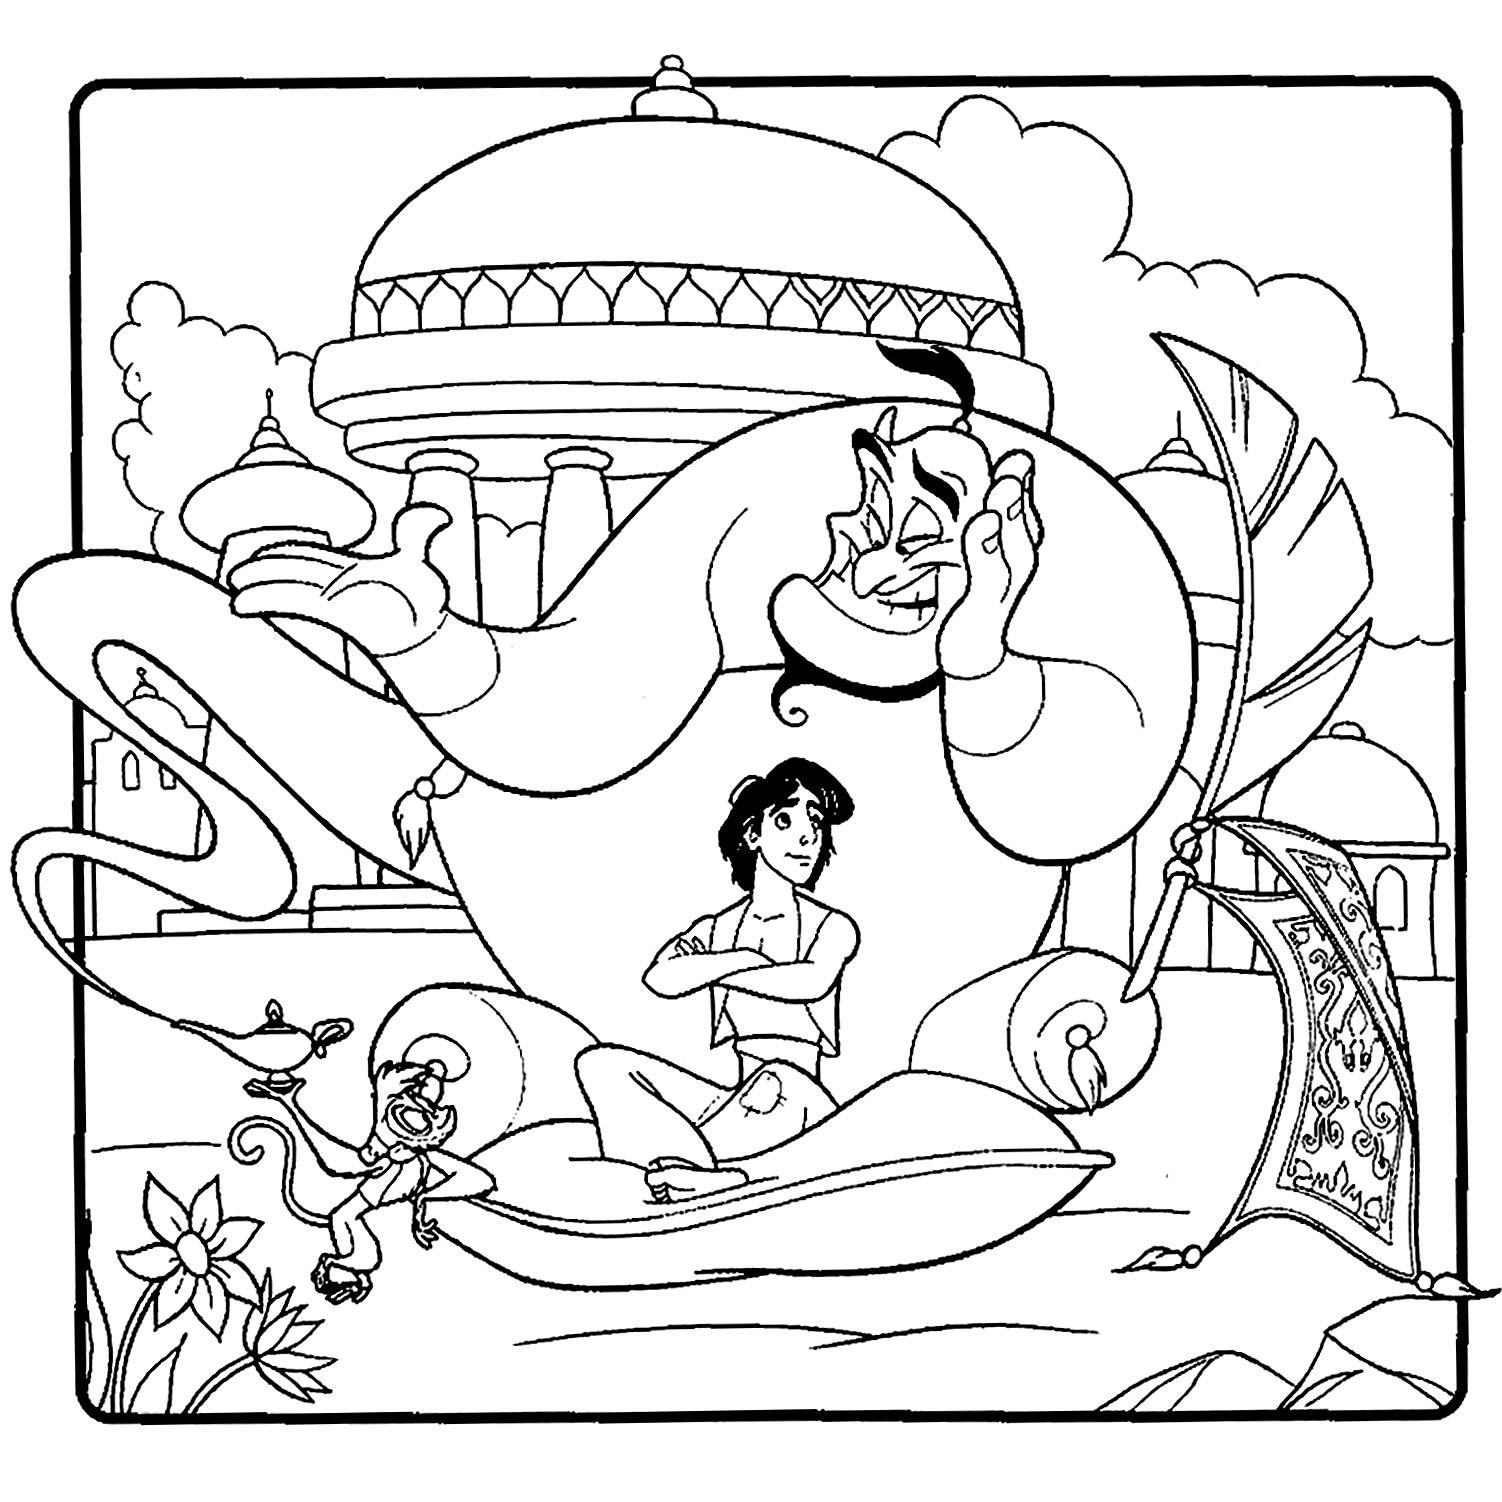 Joli coloriage d'Aladdin avec son ami le génie